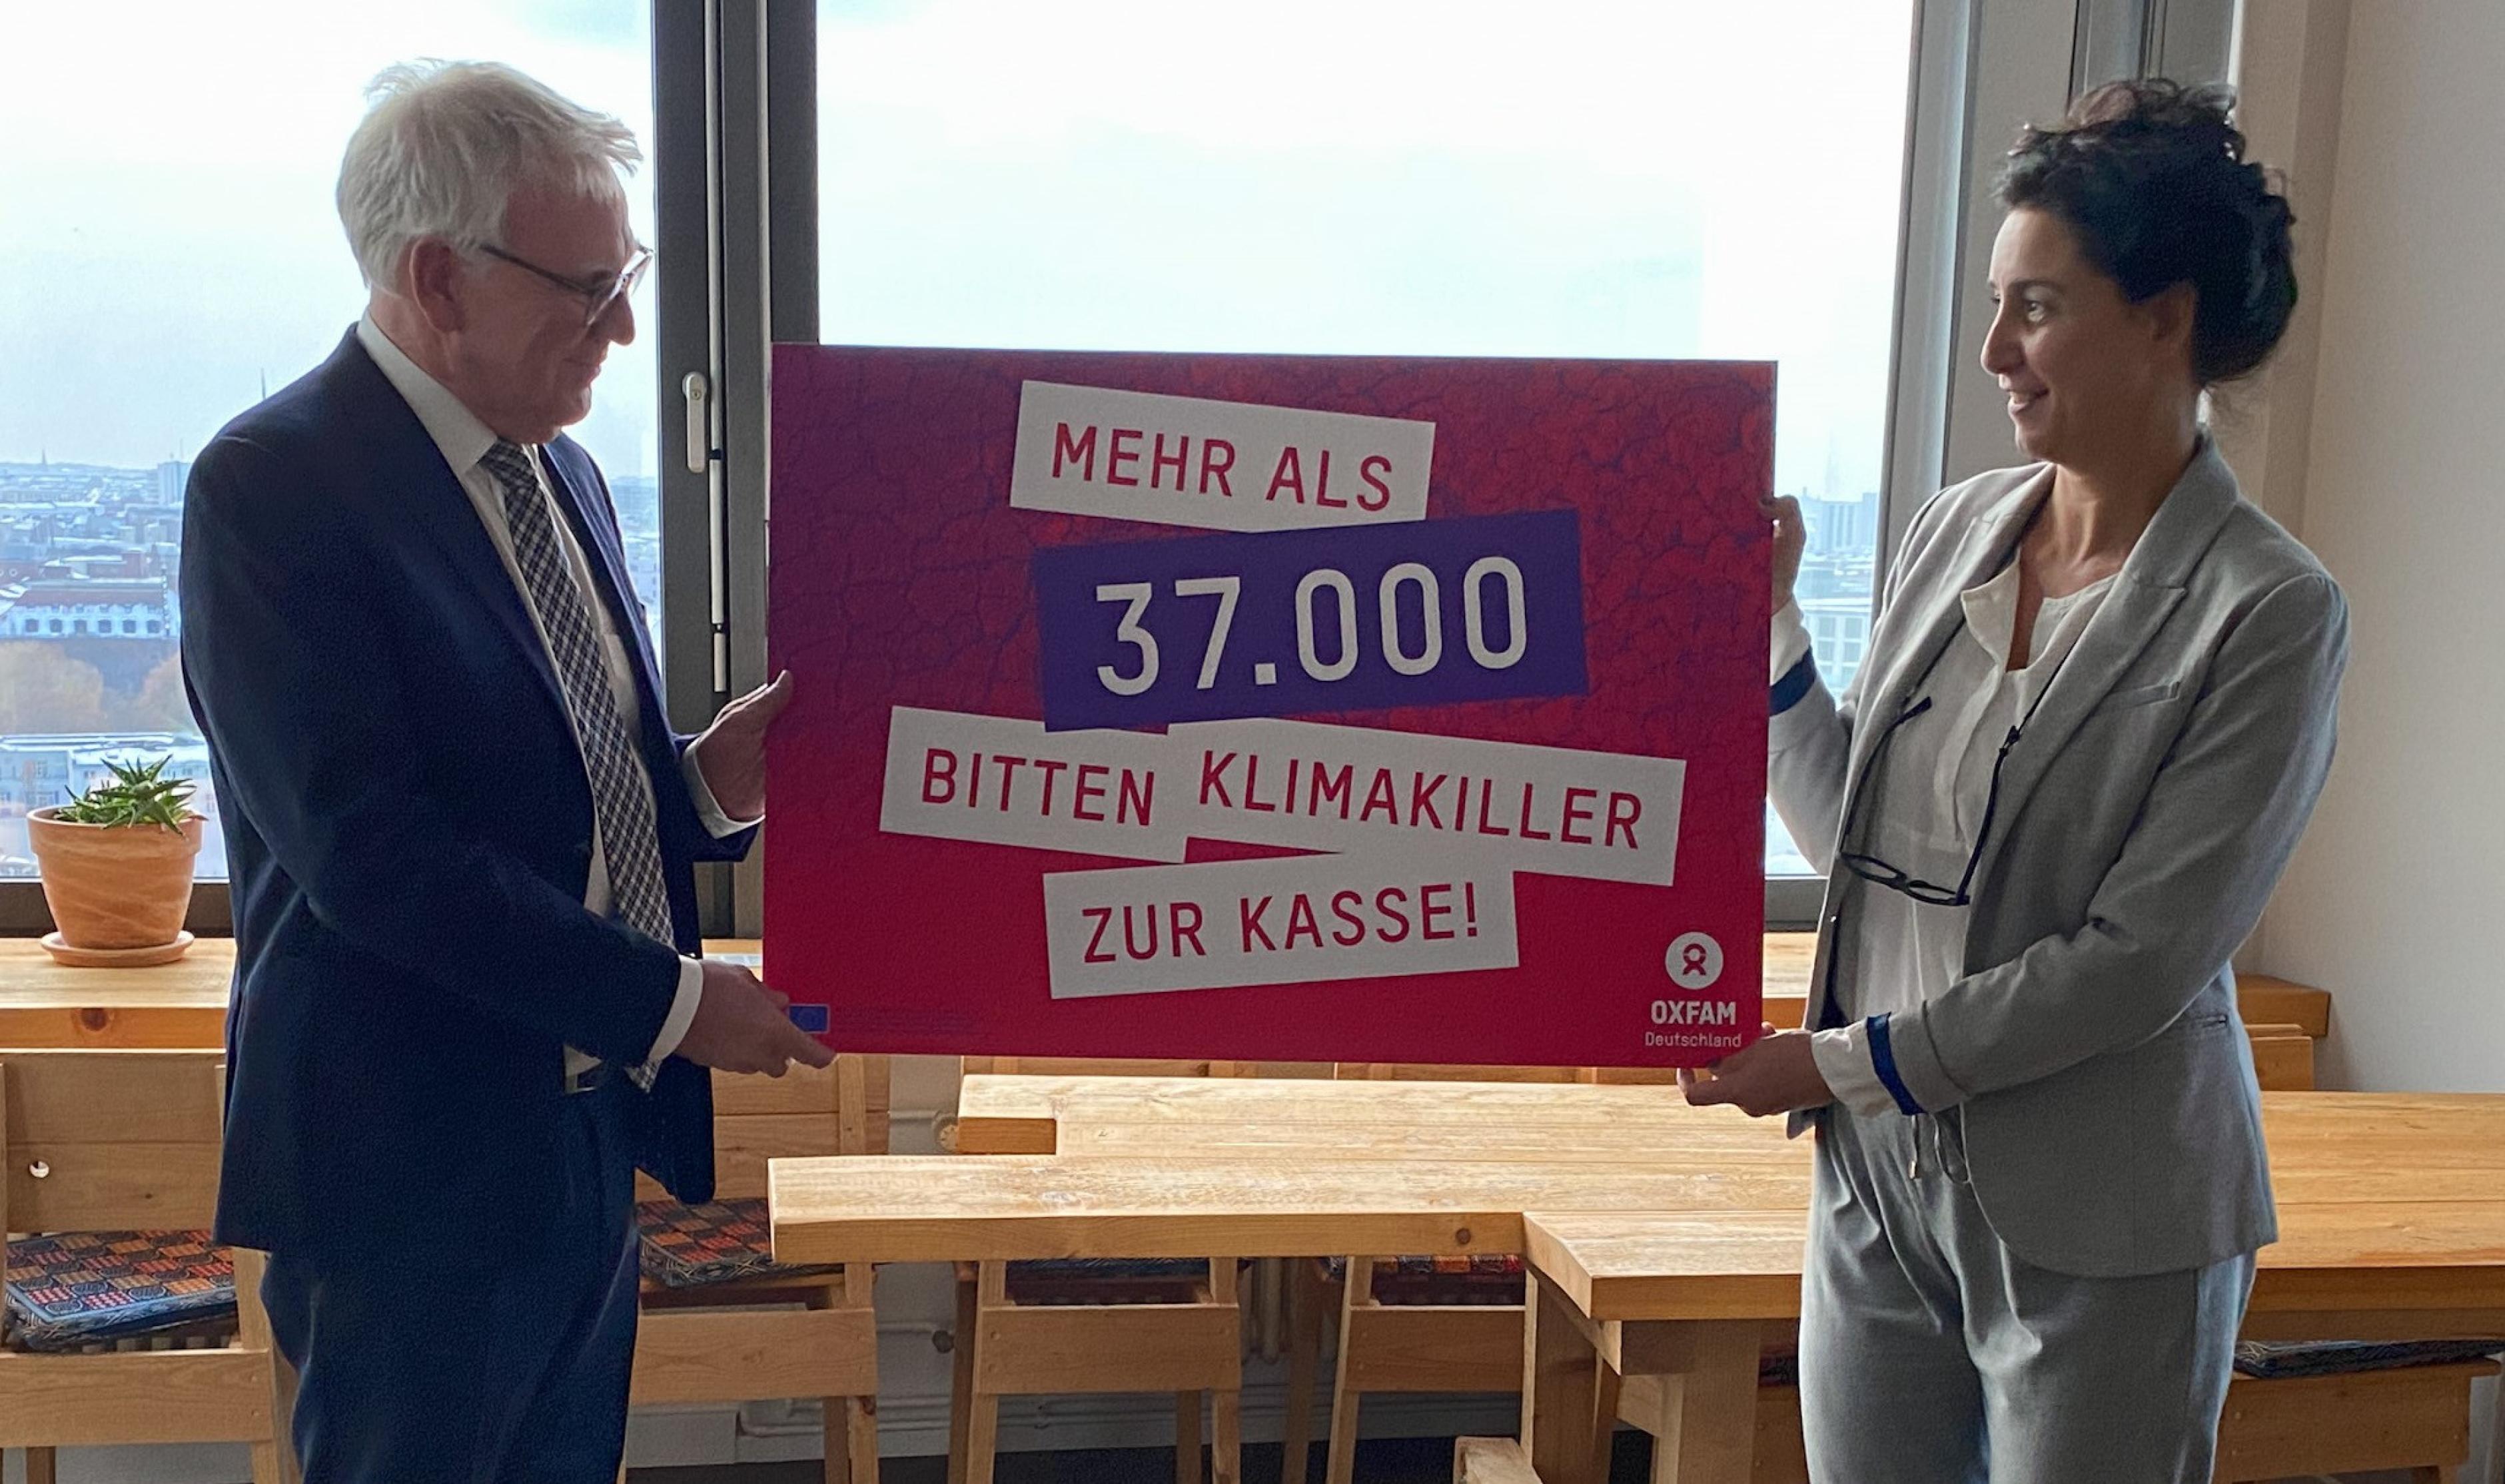 Zwei Menschen halten ein Schild hoch, auf dem steht: Mehr als 37.000 bitten Klimakiller zur Kasse. Dies bezieht sich auf eine Unterschriftenaktion, die Aufmerksamkeit auf eine gerechte Klimapolitik lenken soll.